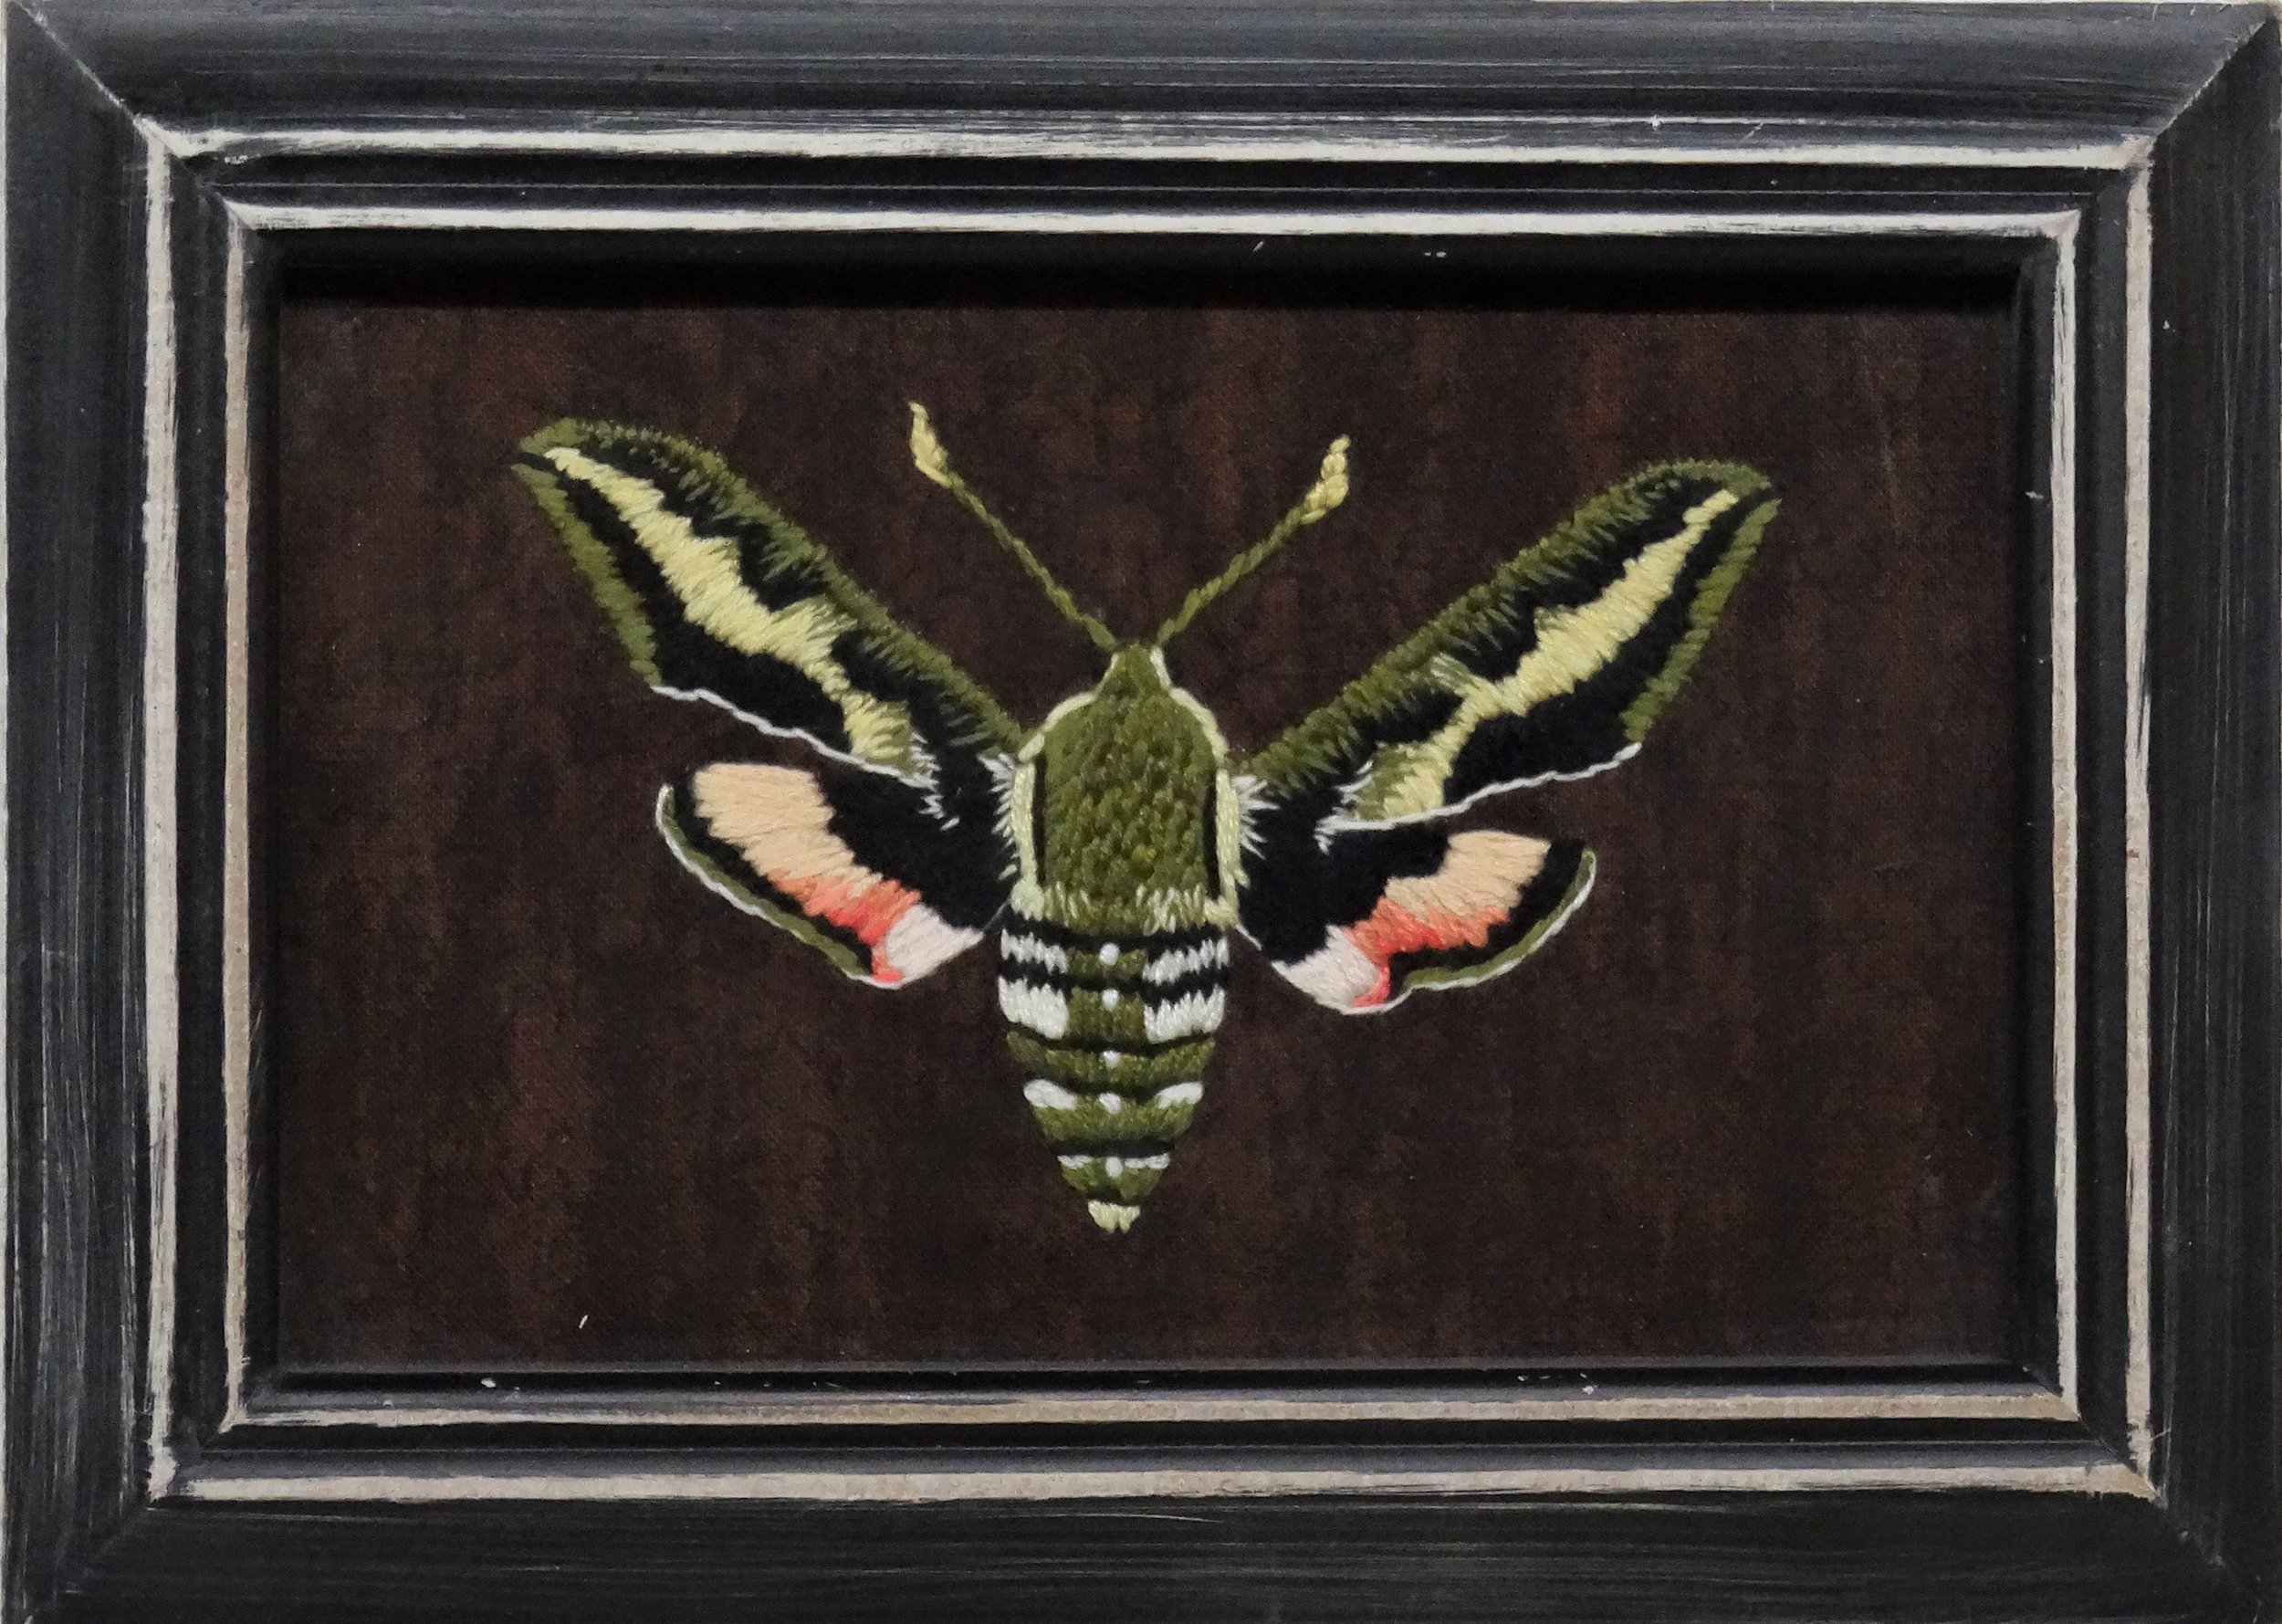 Bedstraw Hawk Moth (Hyles gallii)